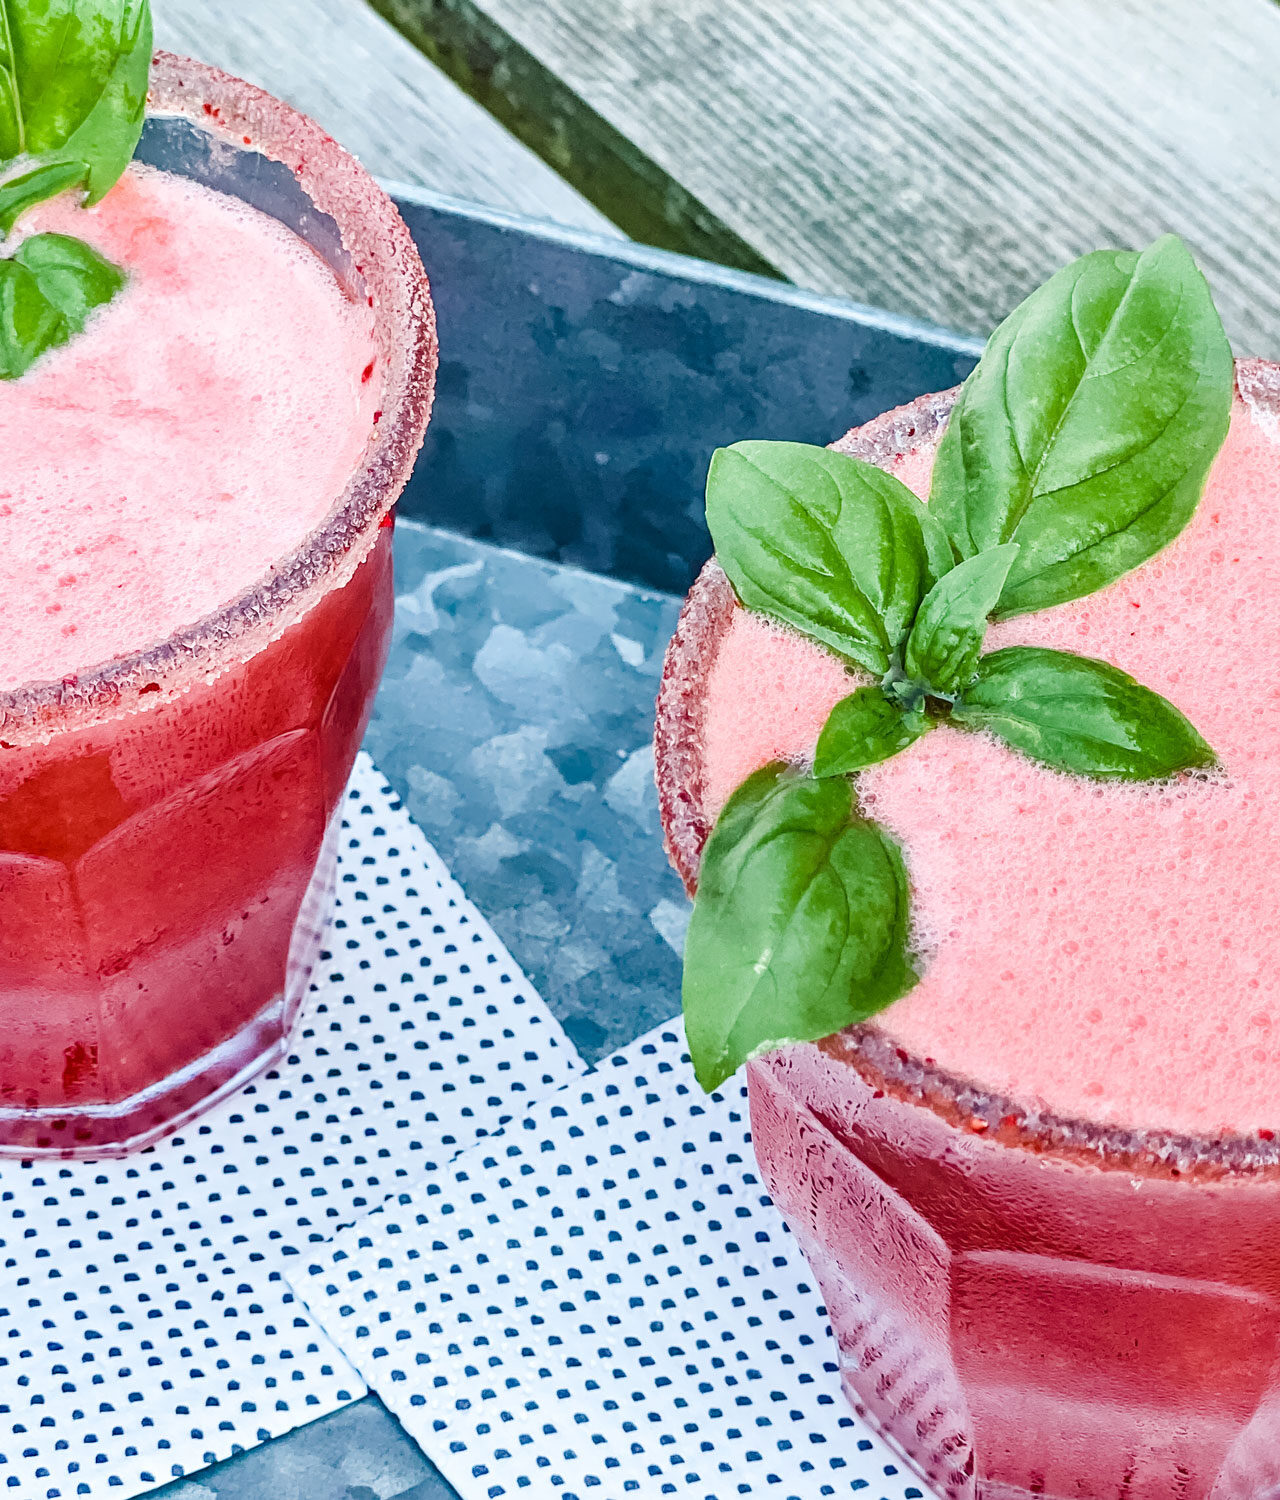 2 glasses of strawberry basil lemonade